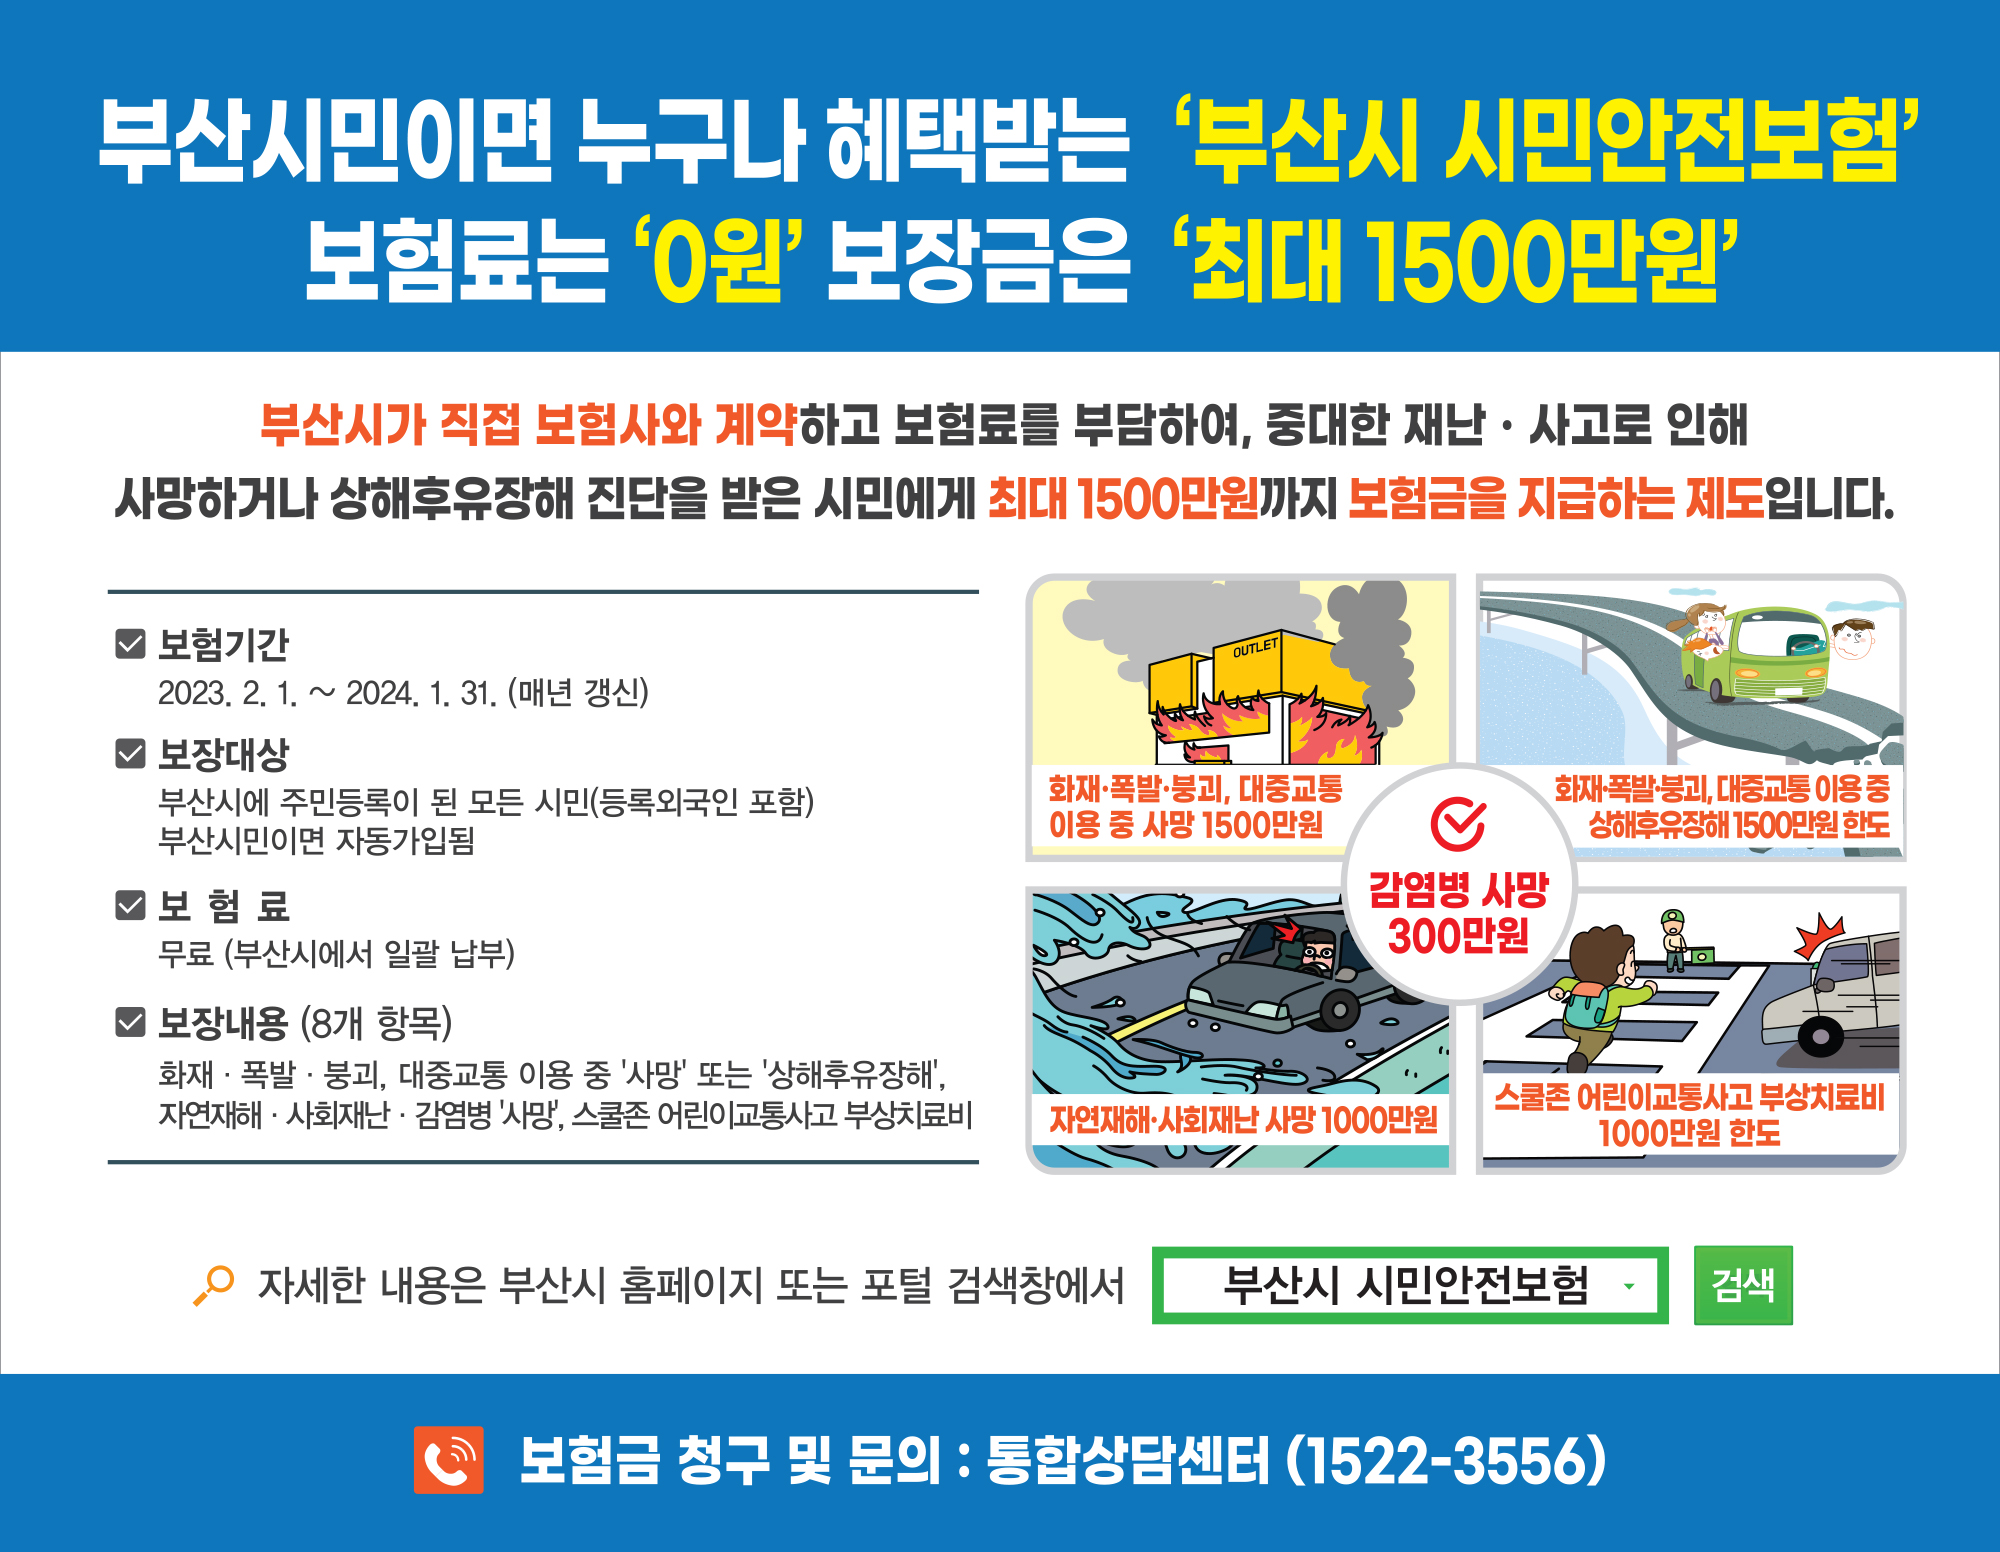 『2023년 부산광역시 시민안전보험』 개편사항 알림